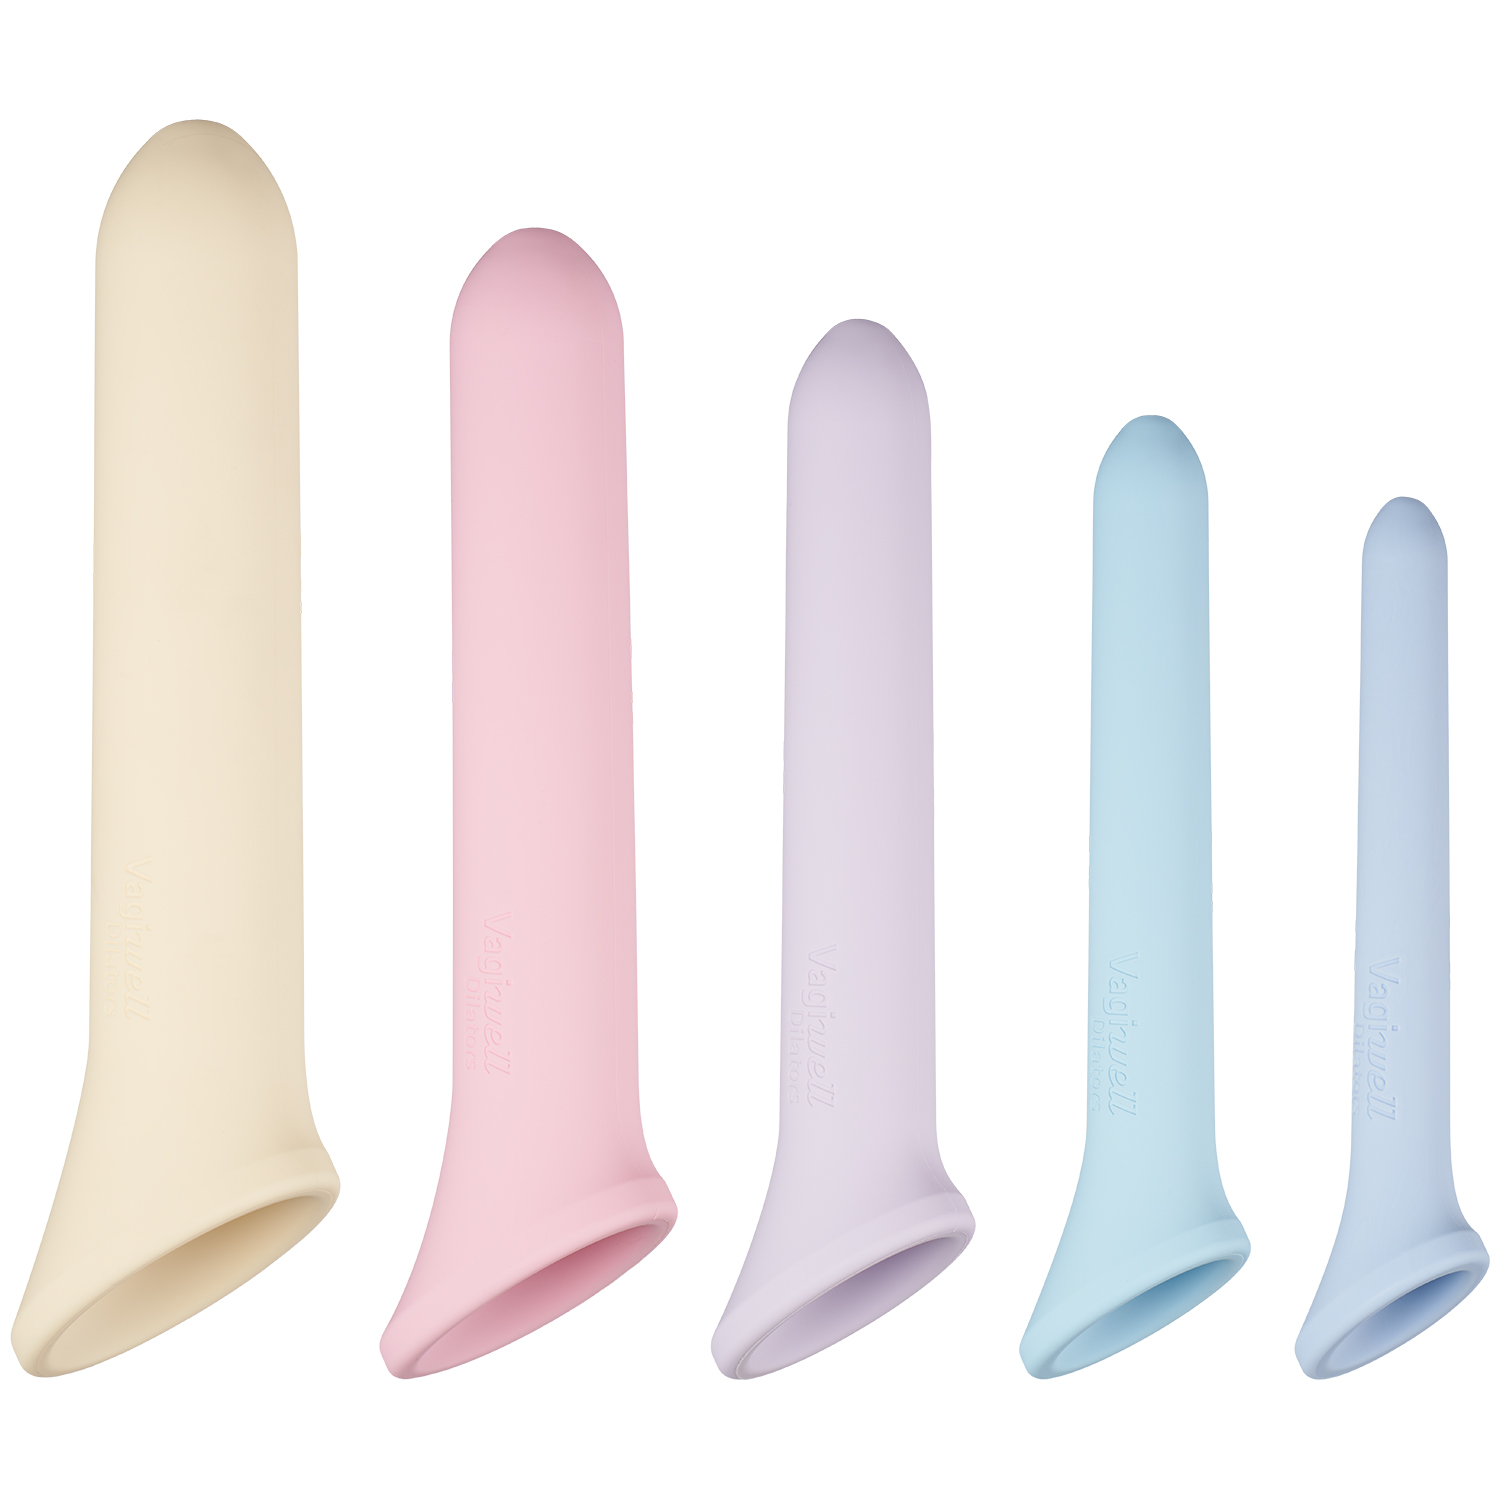 Medintim Vagiwell Premium Dilator Sæt til Vaginal Træning   - Flere farver thumbnail